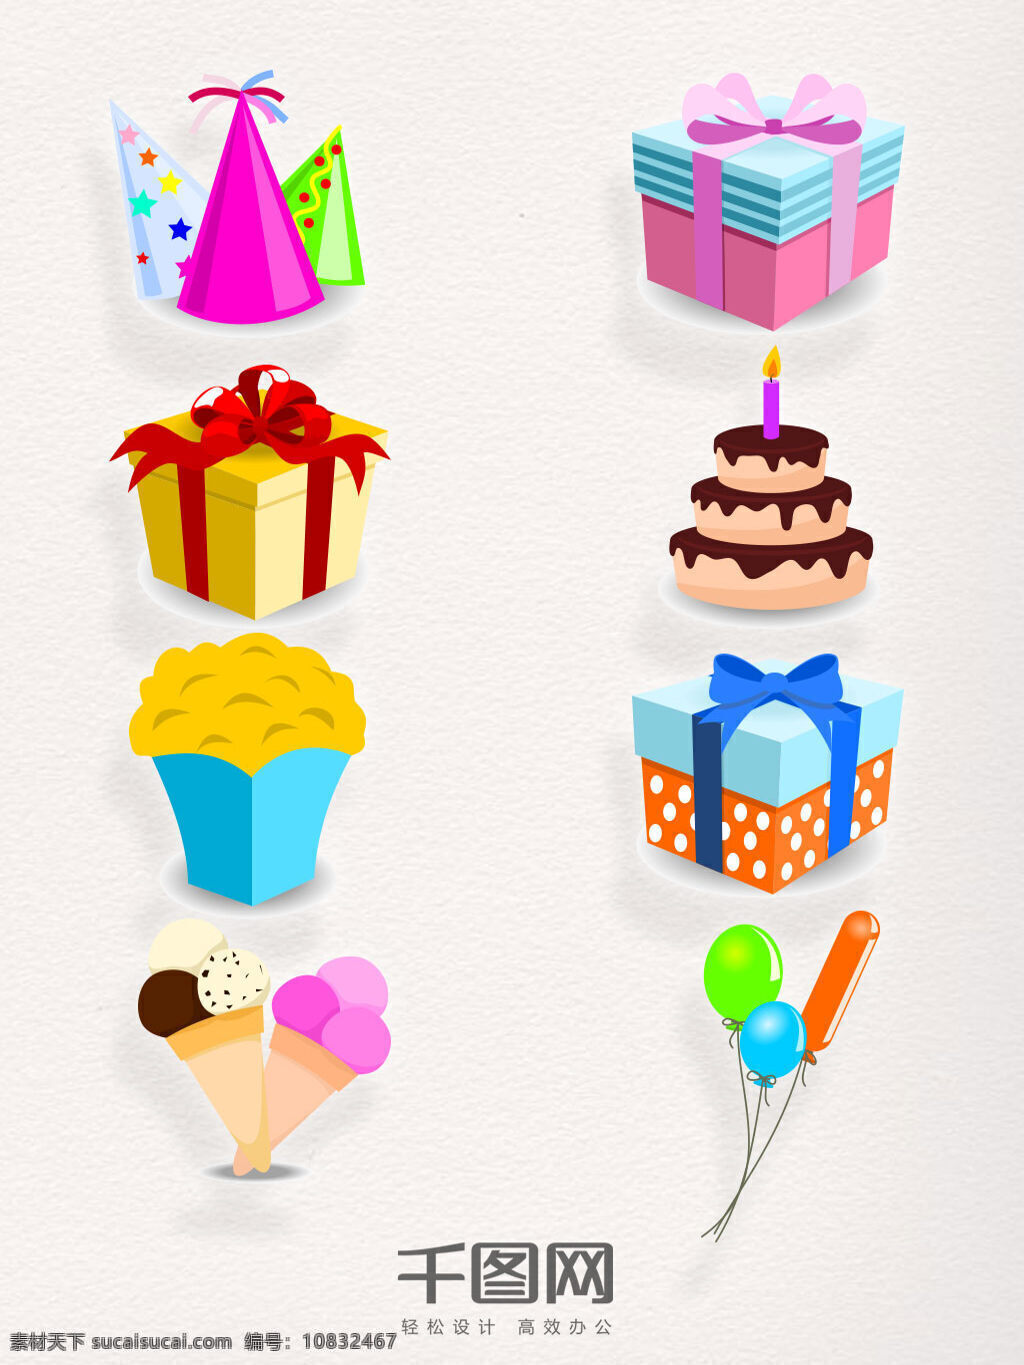 生日 装饰 元素 类 矢量 图案 集合 生日类装饰 生日矢量 生日素材 生日元素 彩色 生日帽 生日蛋糕 生日气球 立体 生日礼物